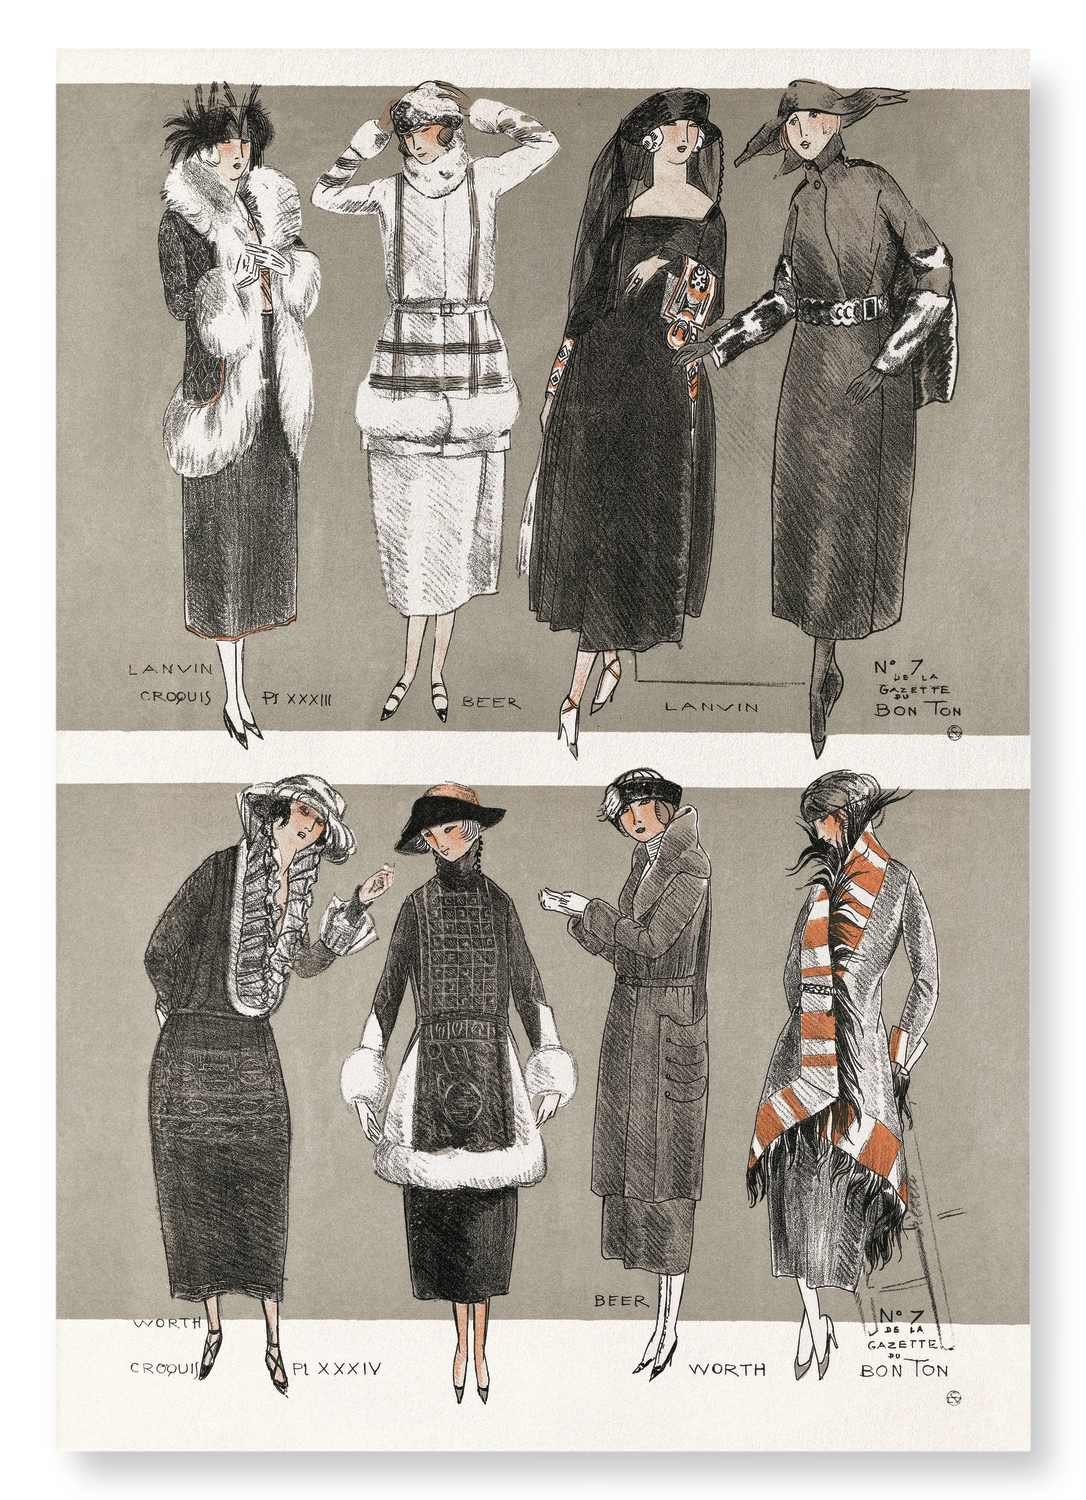 GAZETTE DU BON TON (1920): Vintage Art Print